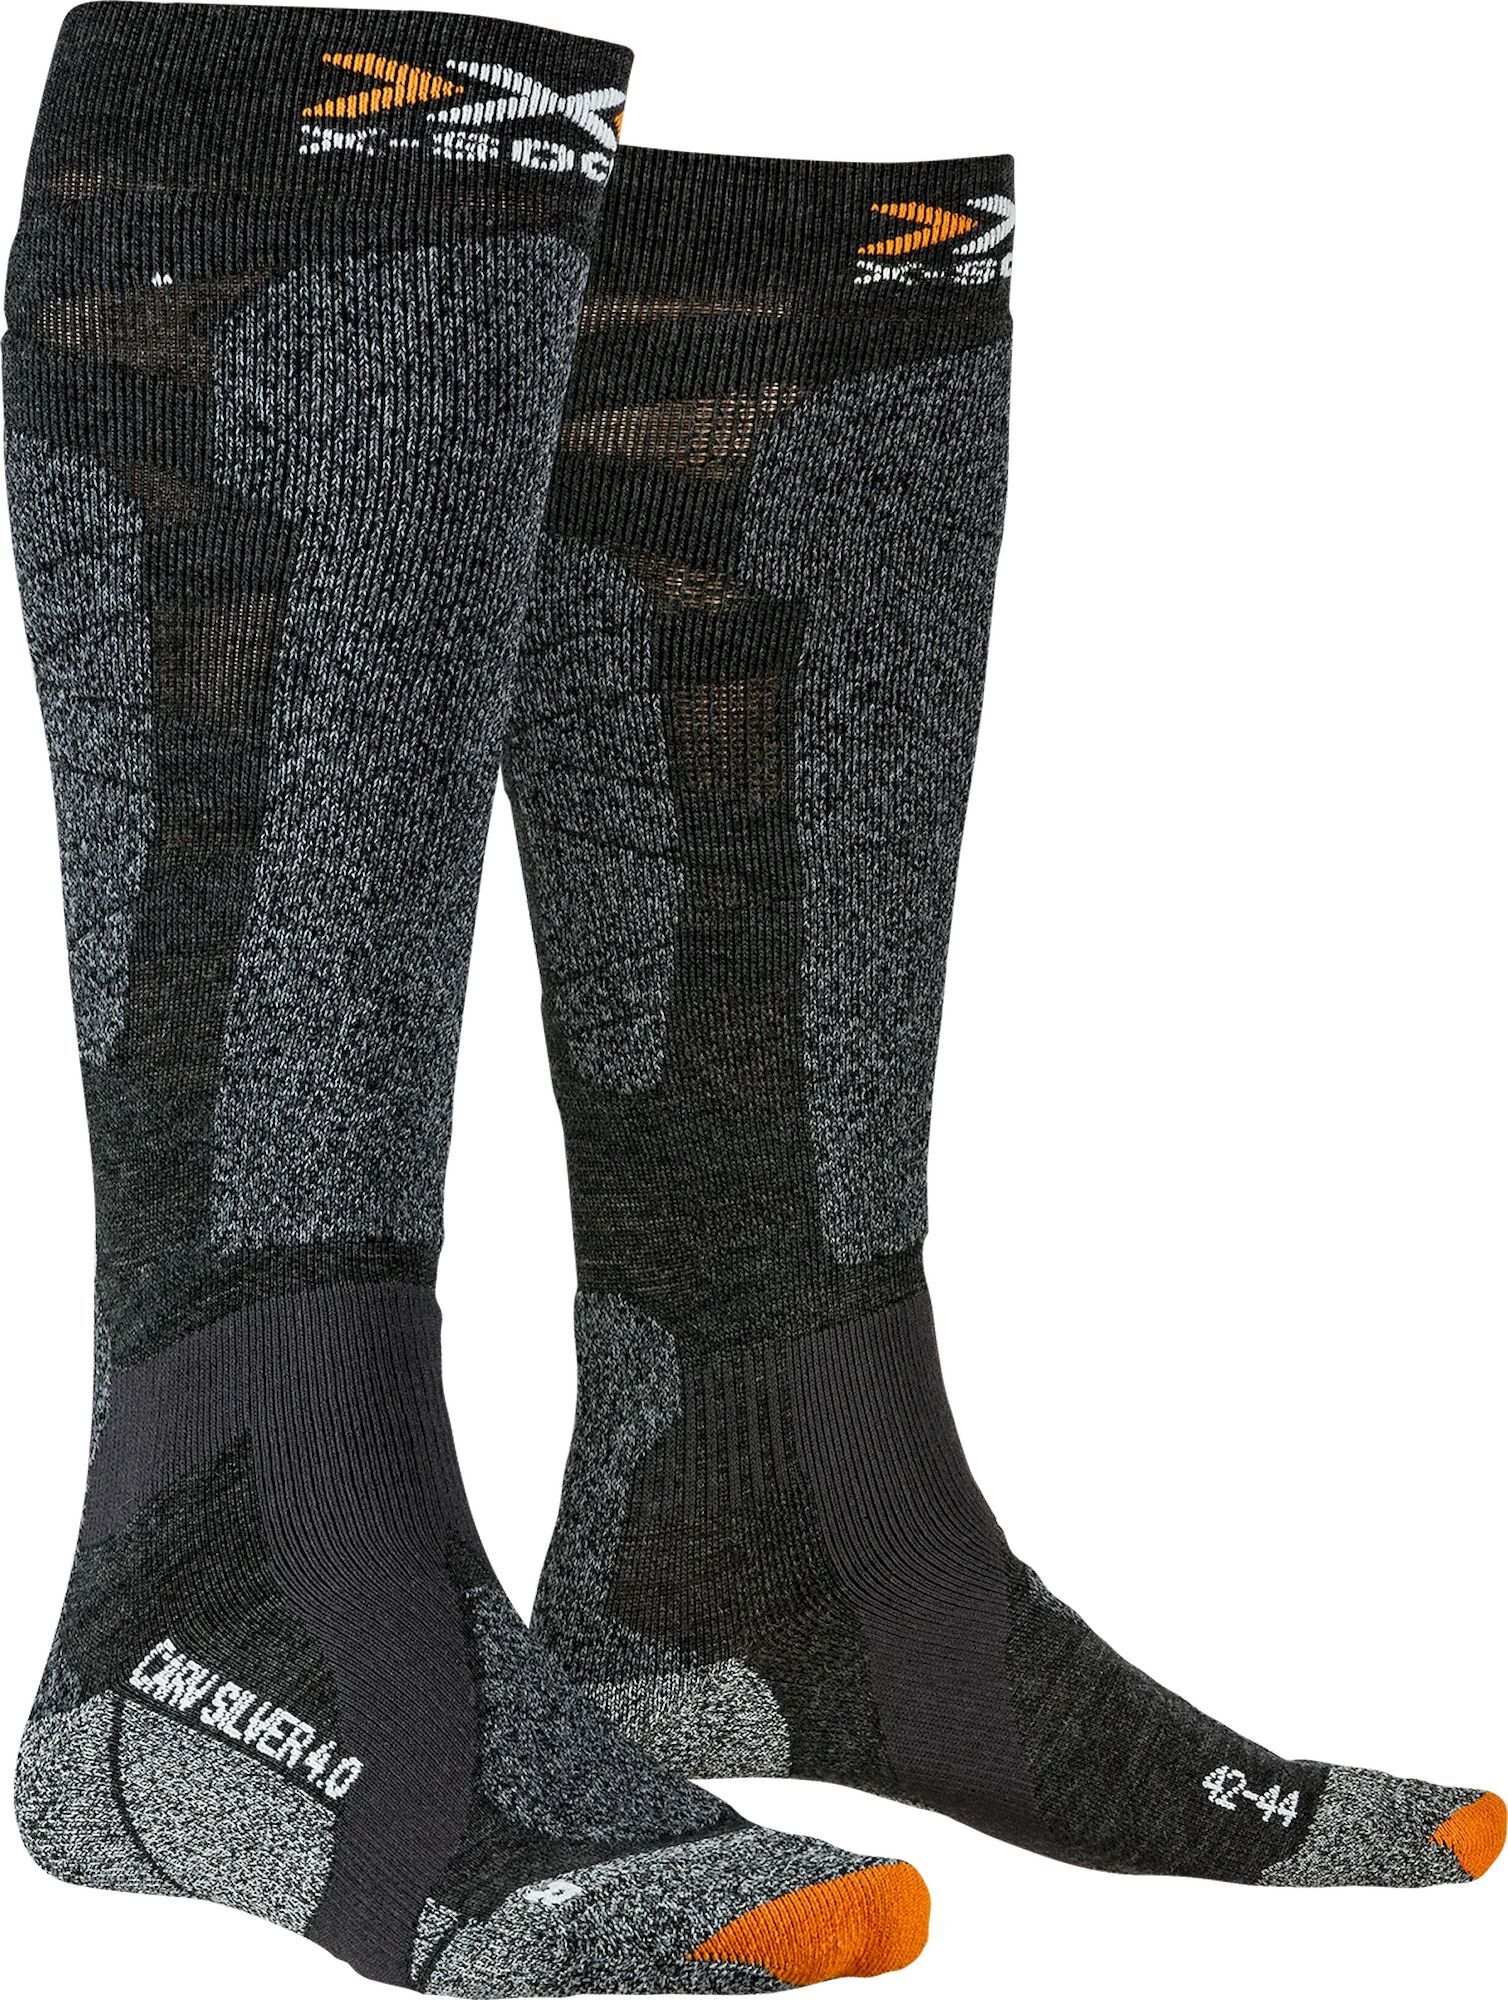 X-Socks Carve Silver 4.0 - Ski socks